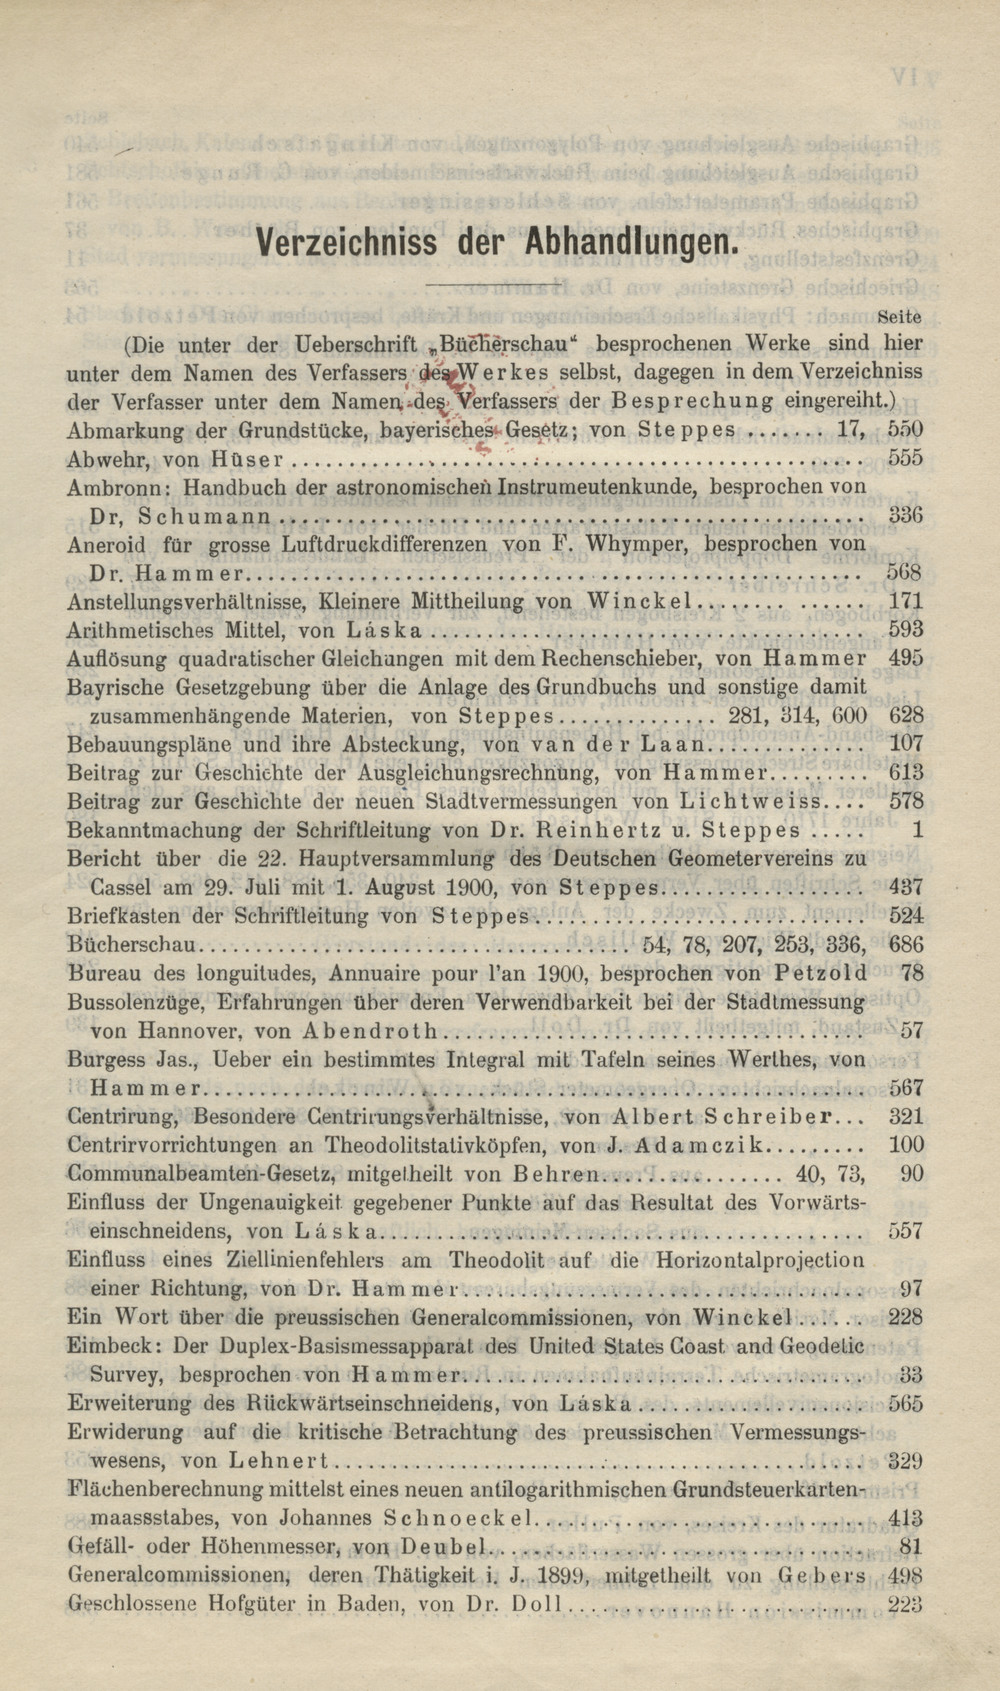 Zeitschrift für Vermessungswesen, 1900, Index